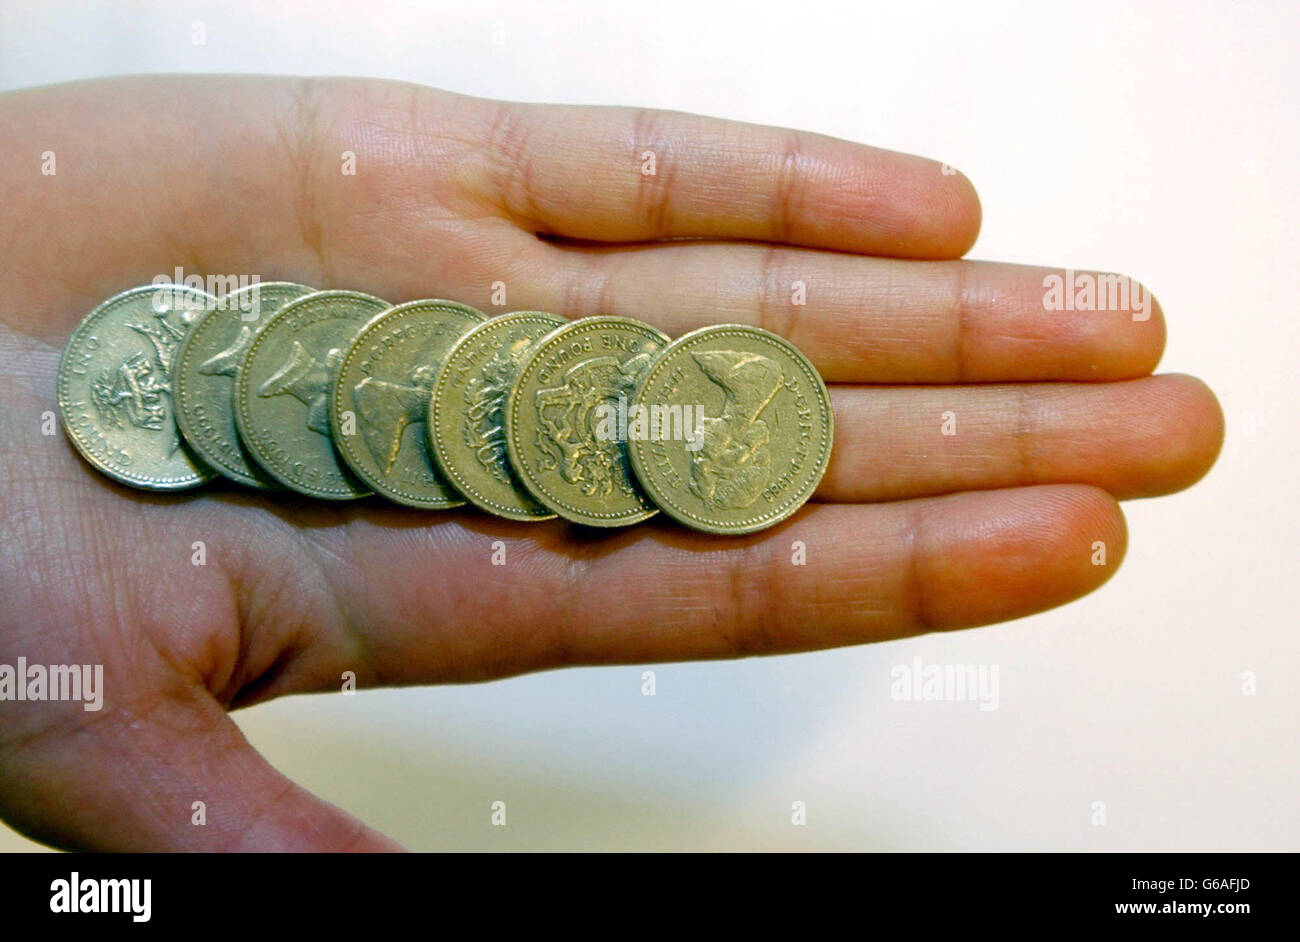 Valuta del Regno Unito - 1 monete. Foto di stock di monete inglesi da una sterlina. Foto Stock